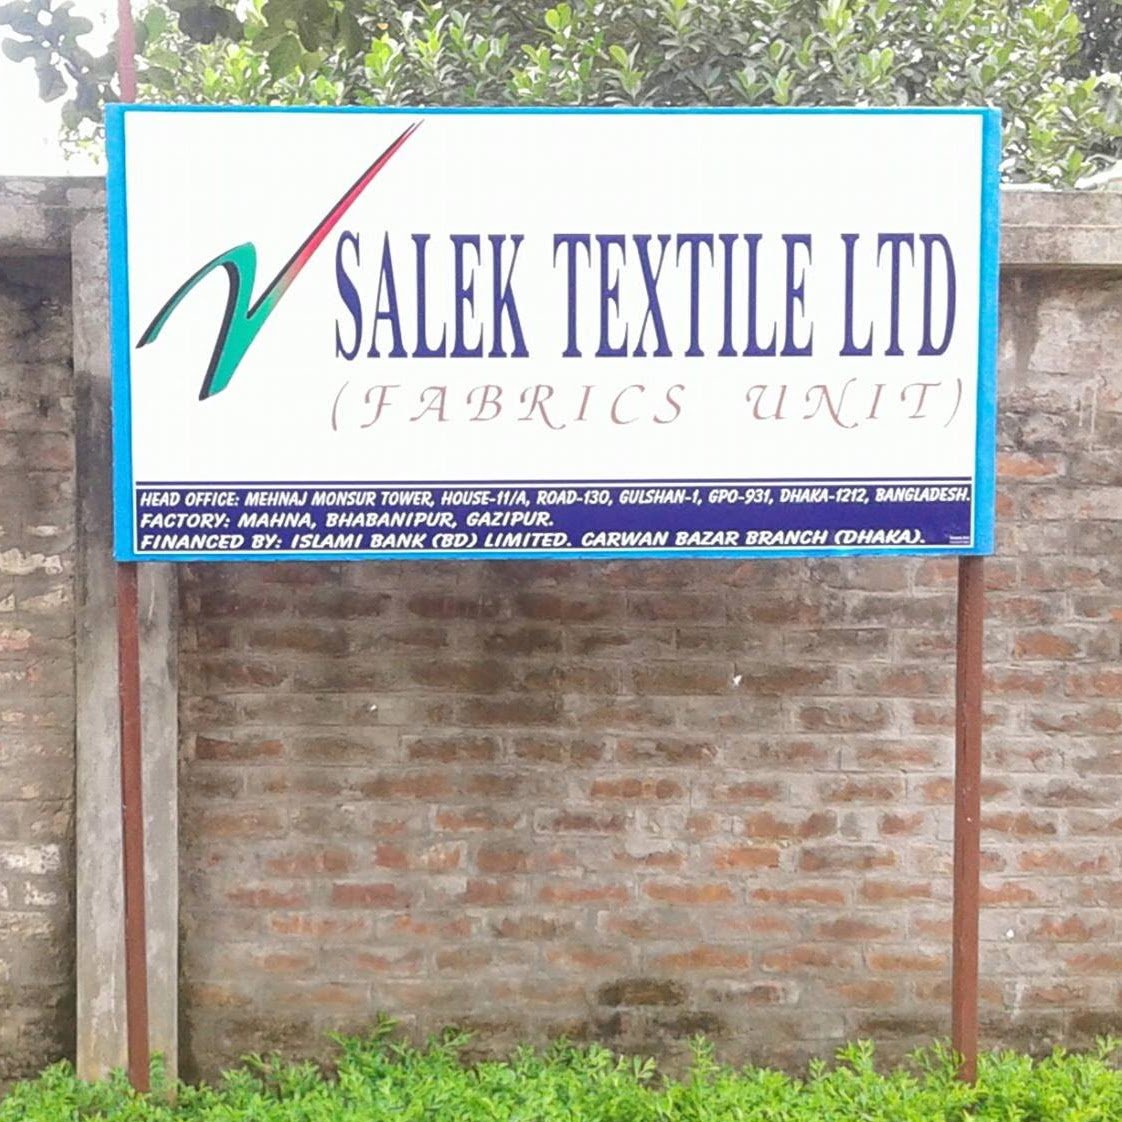 Salek Textile Ltd Salektextileltd Twitter